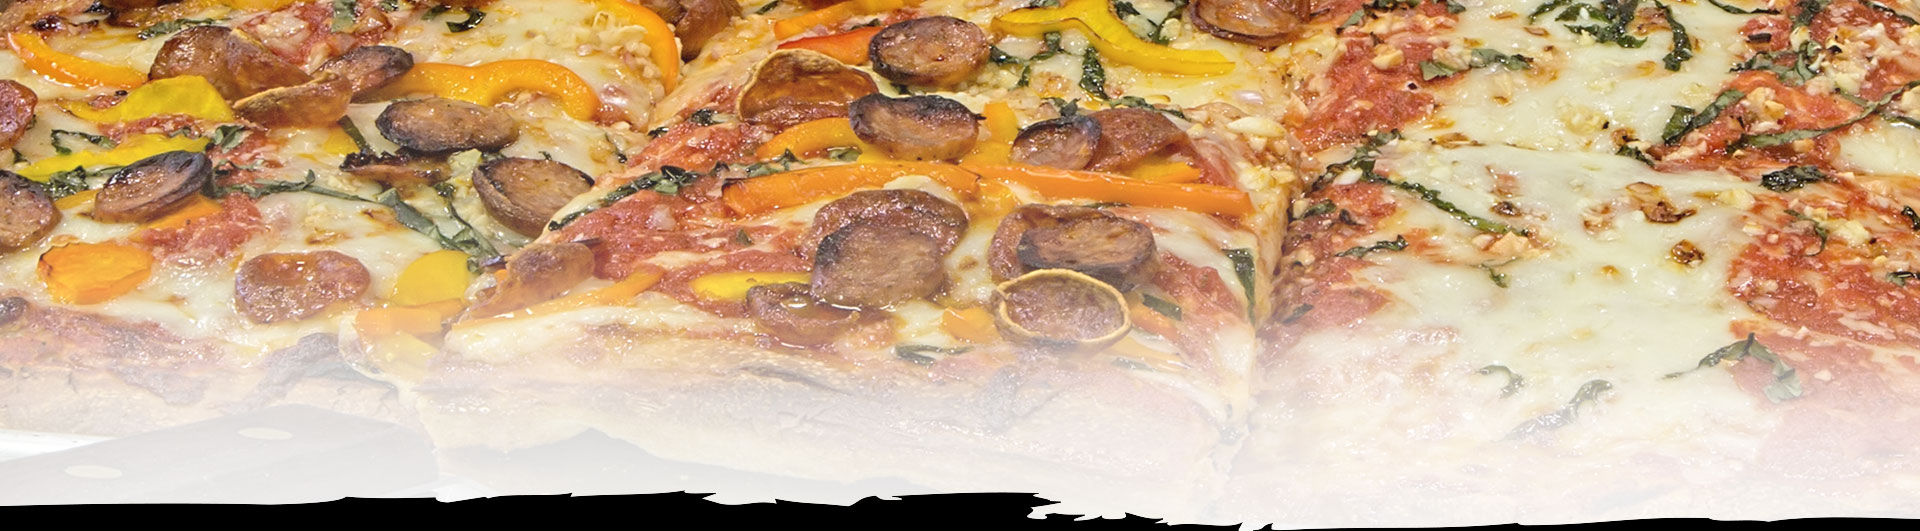 Best Sicilian Near Me in Rochester New York | Joe's Brooklyn Pizza